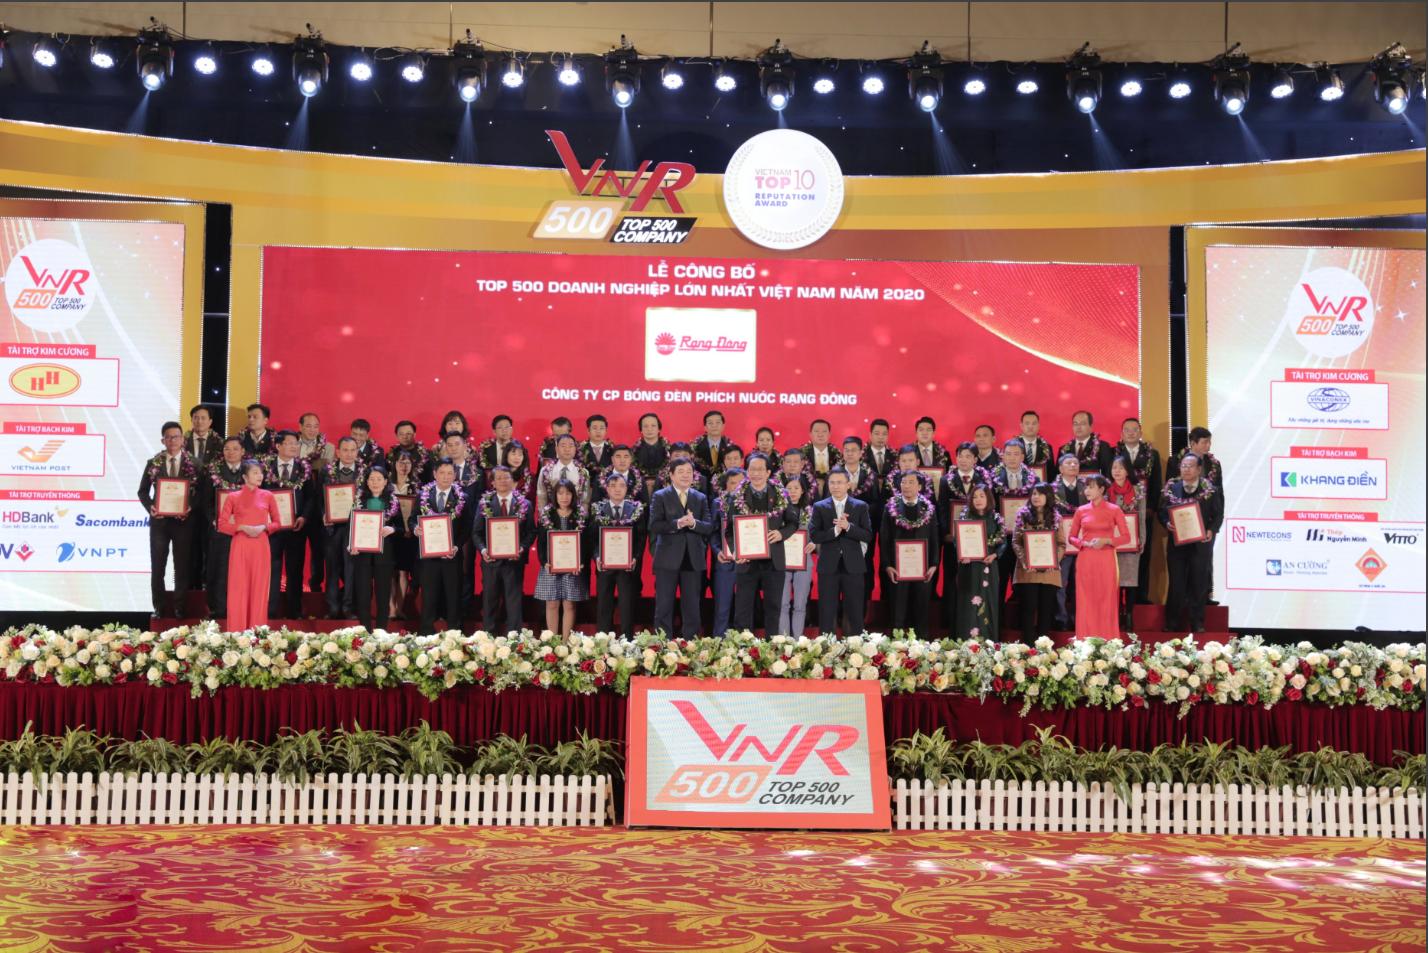 Rạng Đông – TOP 500 doanh nghiệp lớn nhất Việt Nam 2020